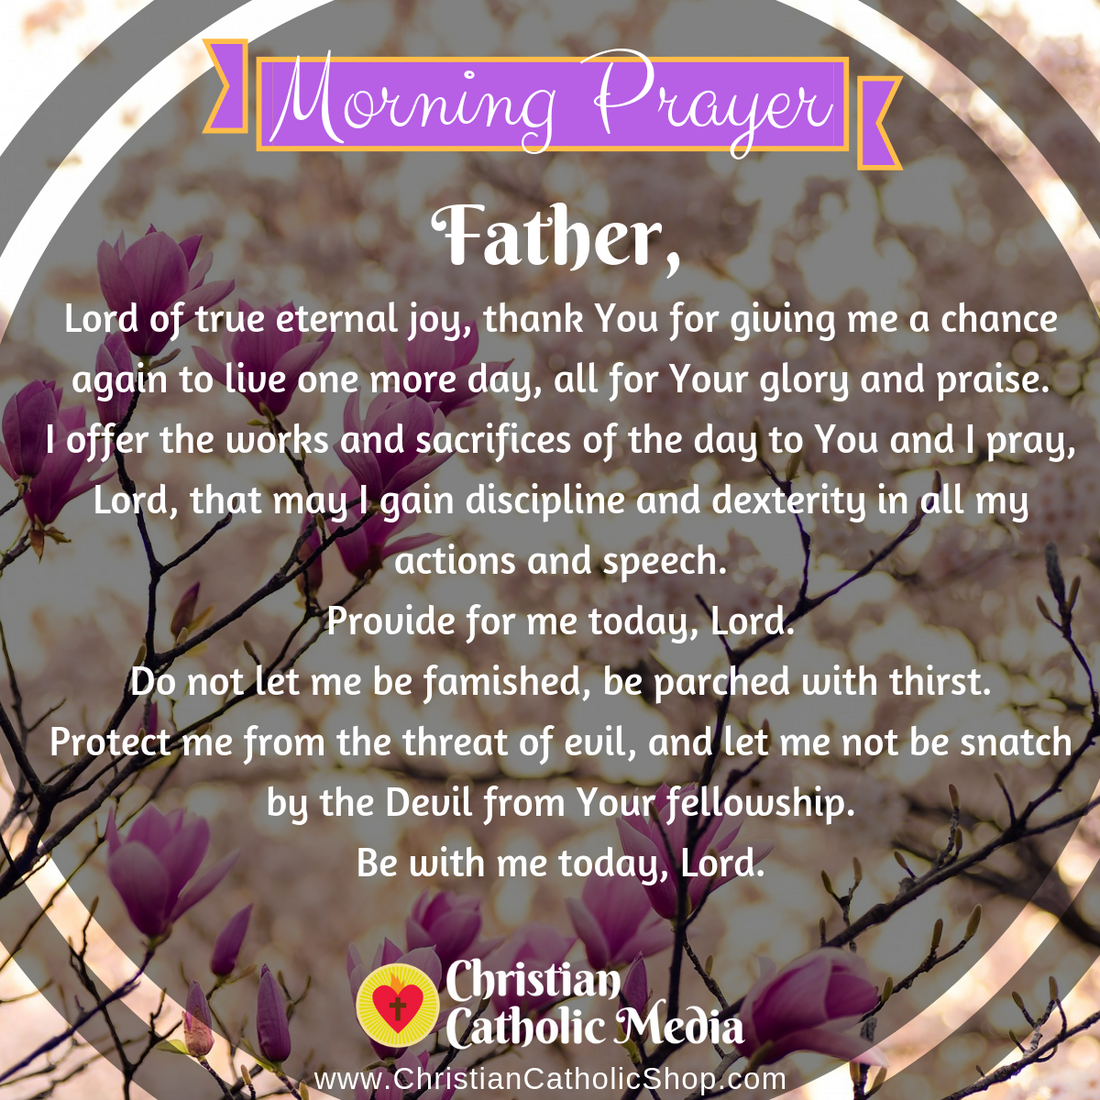 Morning Prayer Catholic Tuesday 4-7-2020